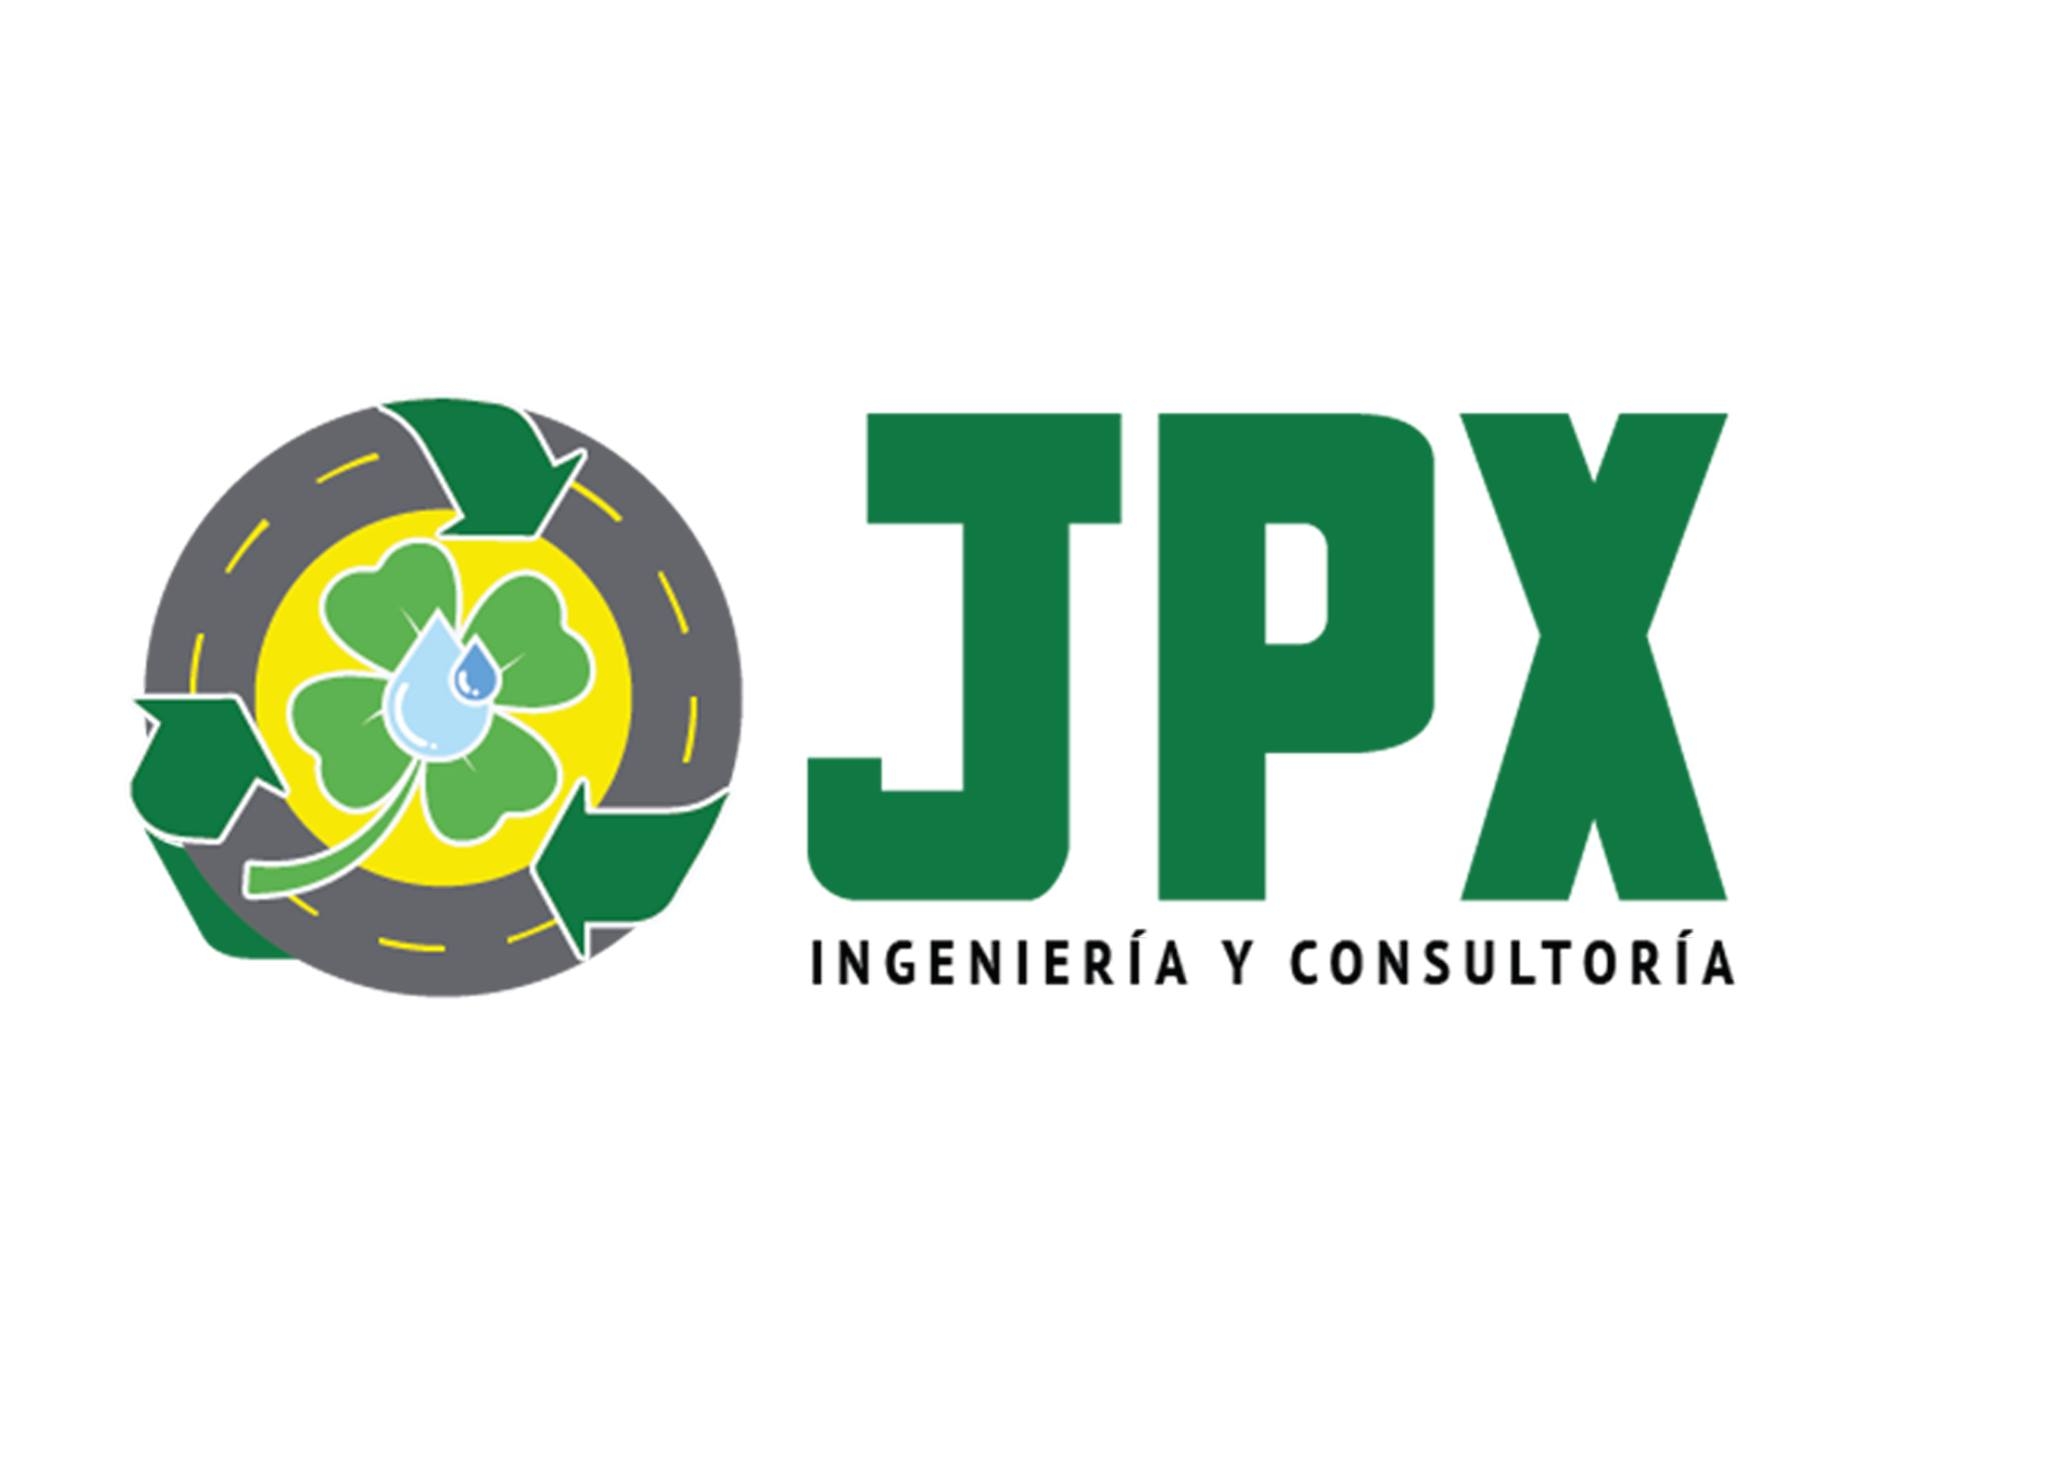 JPX Ingenieria y Consultoria